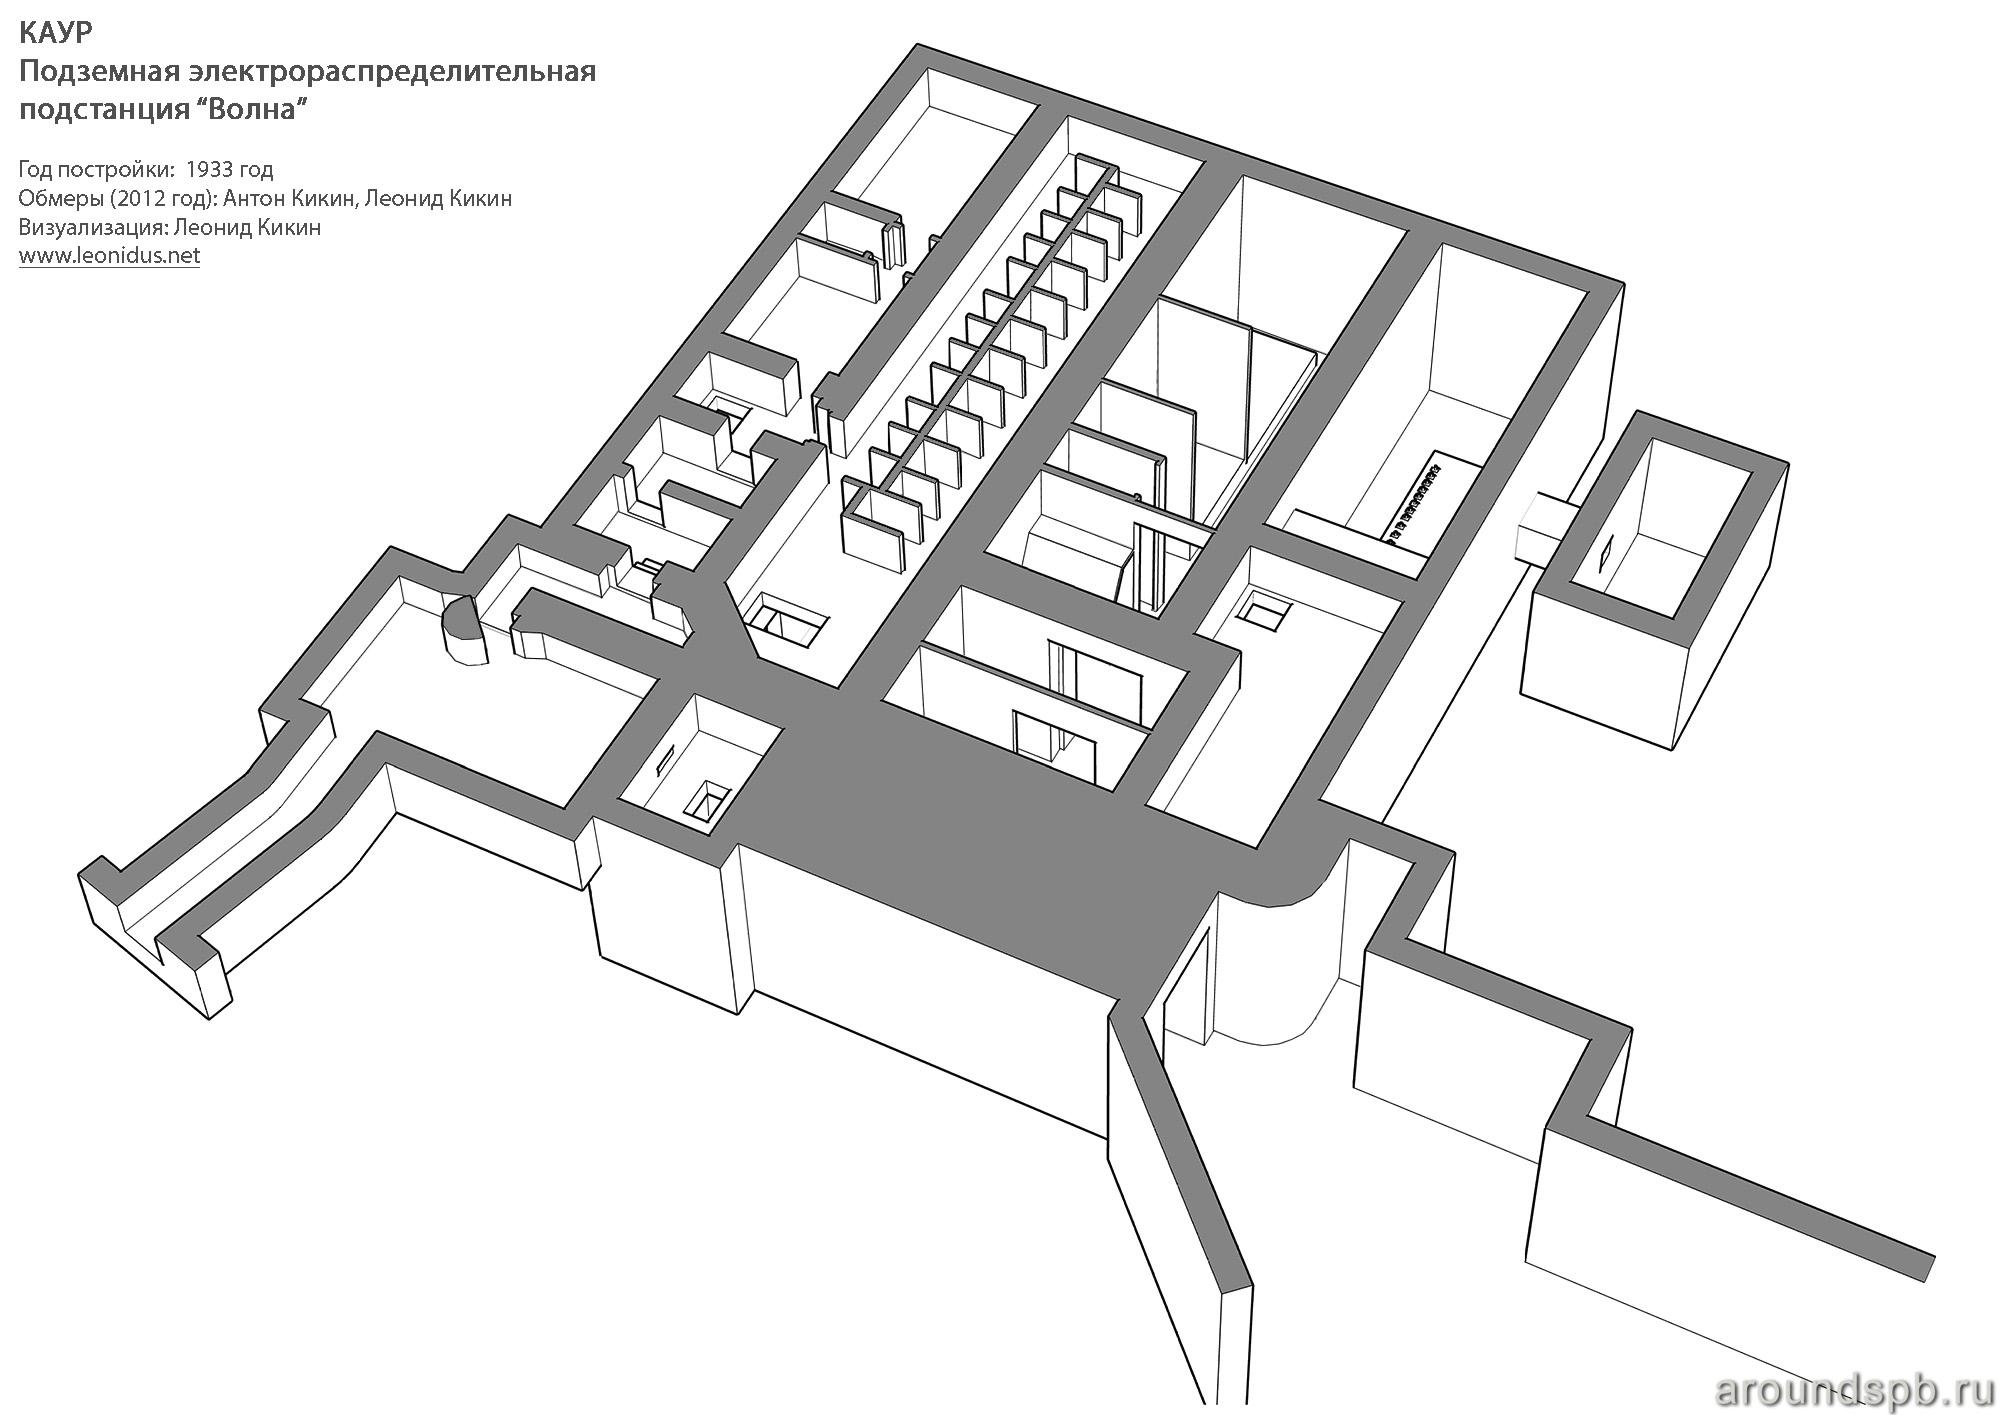 План верхнего этажа Лемболовской подстанции